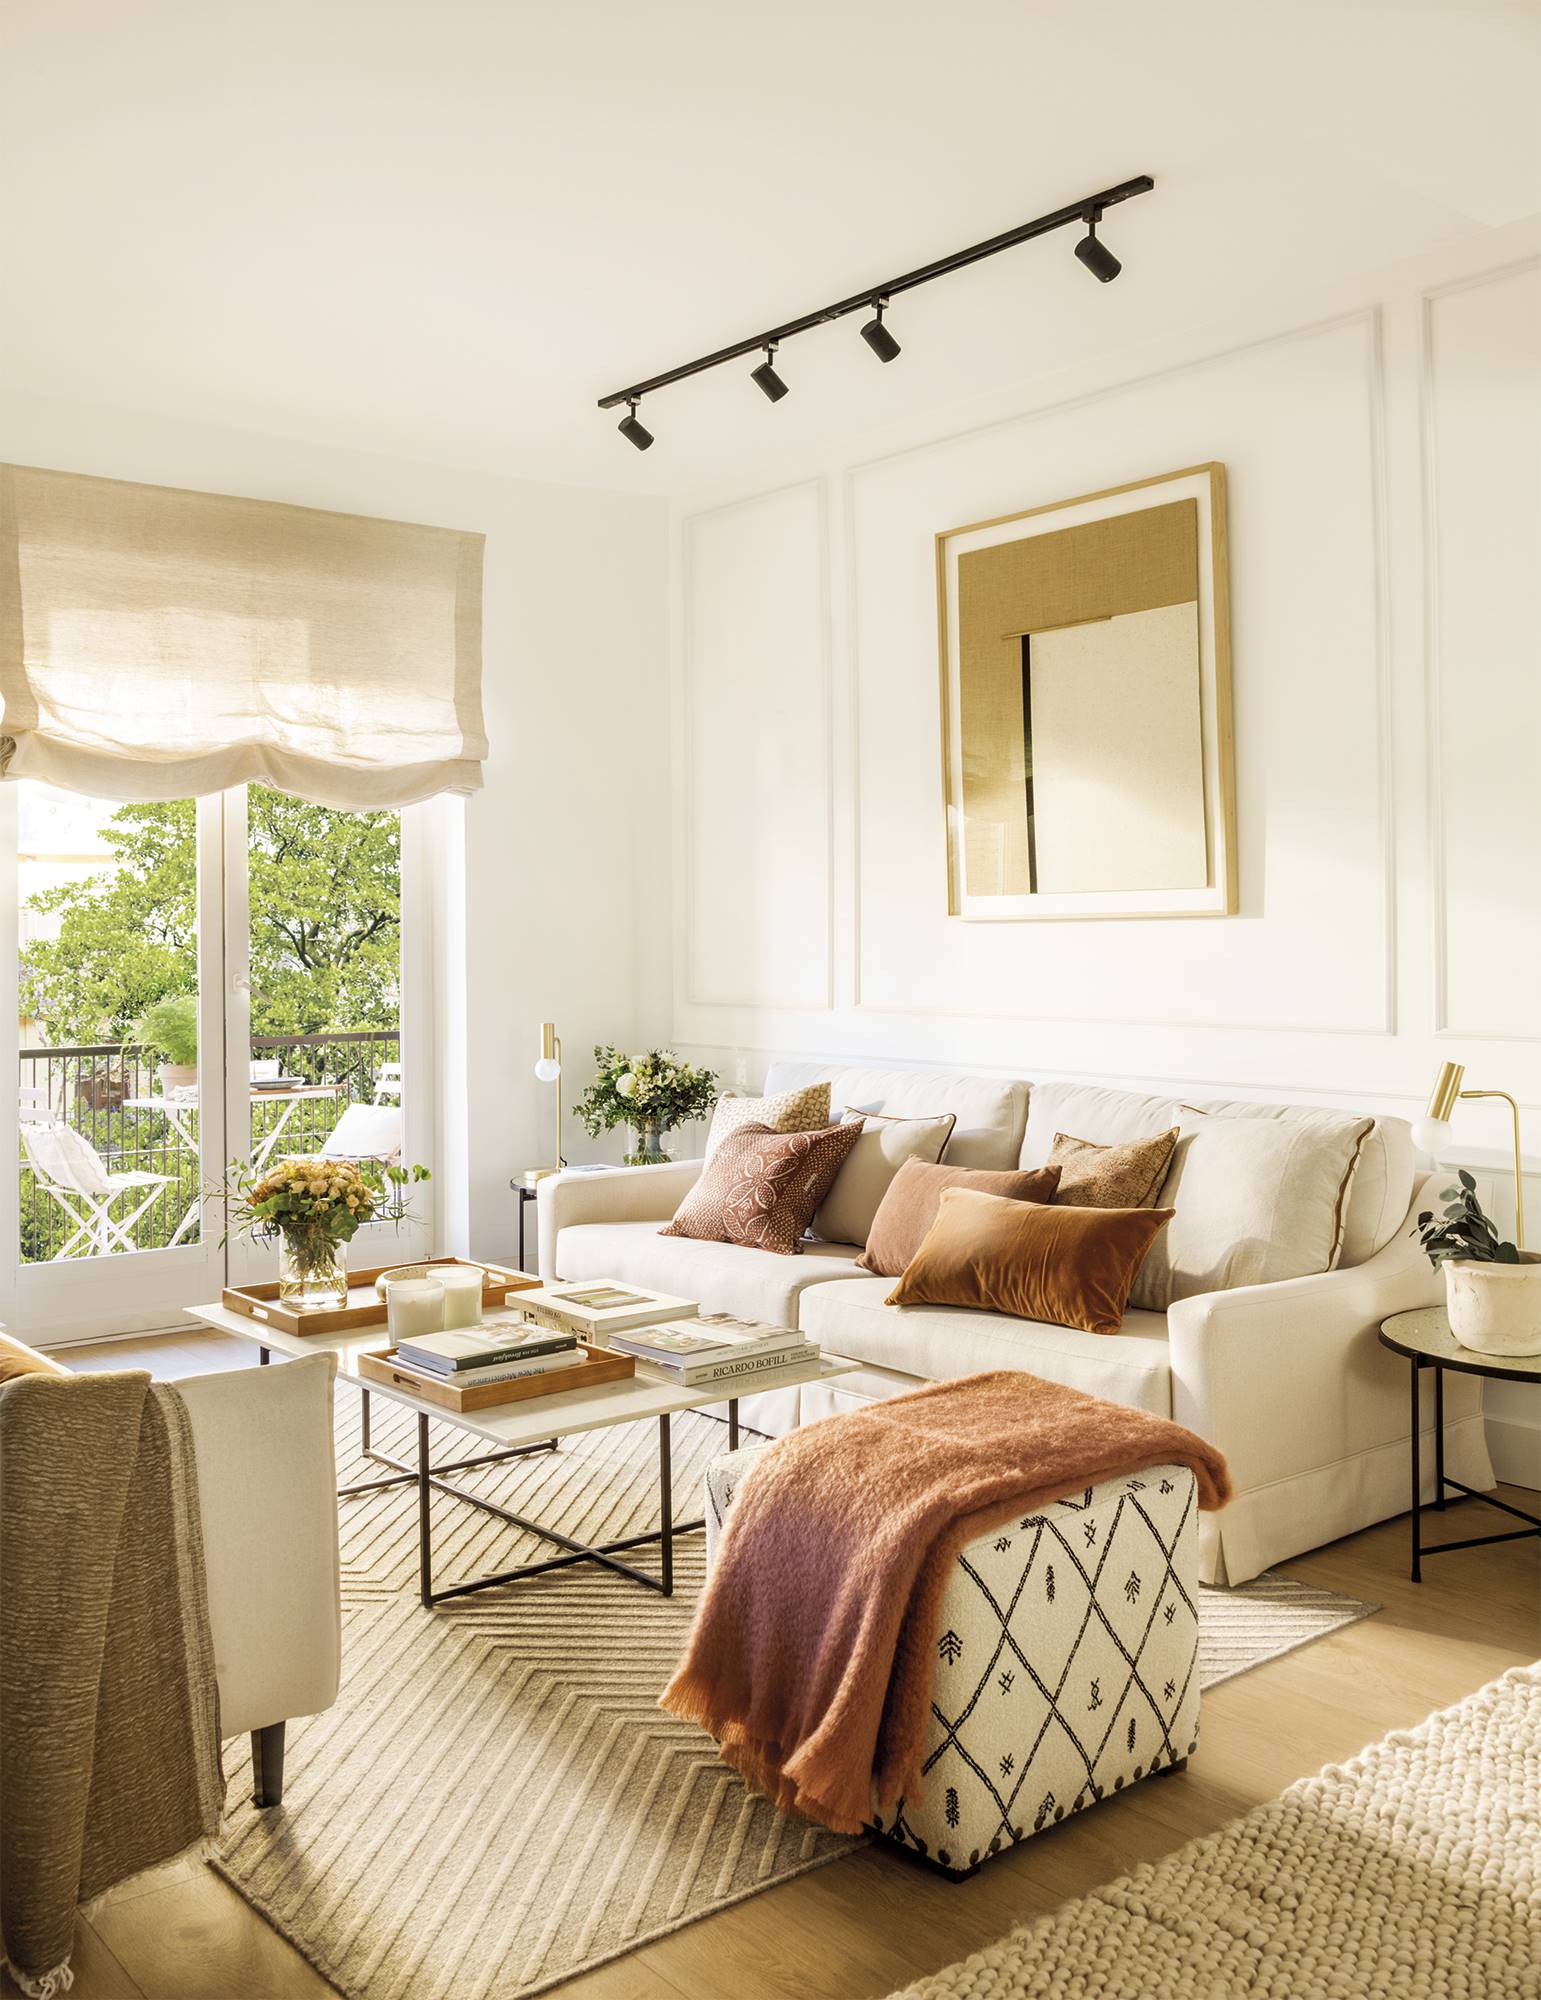 Salón moderno con sofás y puf en color crema, y cojines y plaid en tonos tierra. 